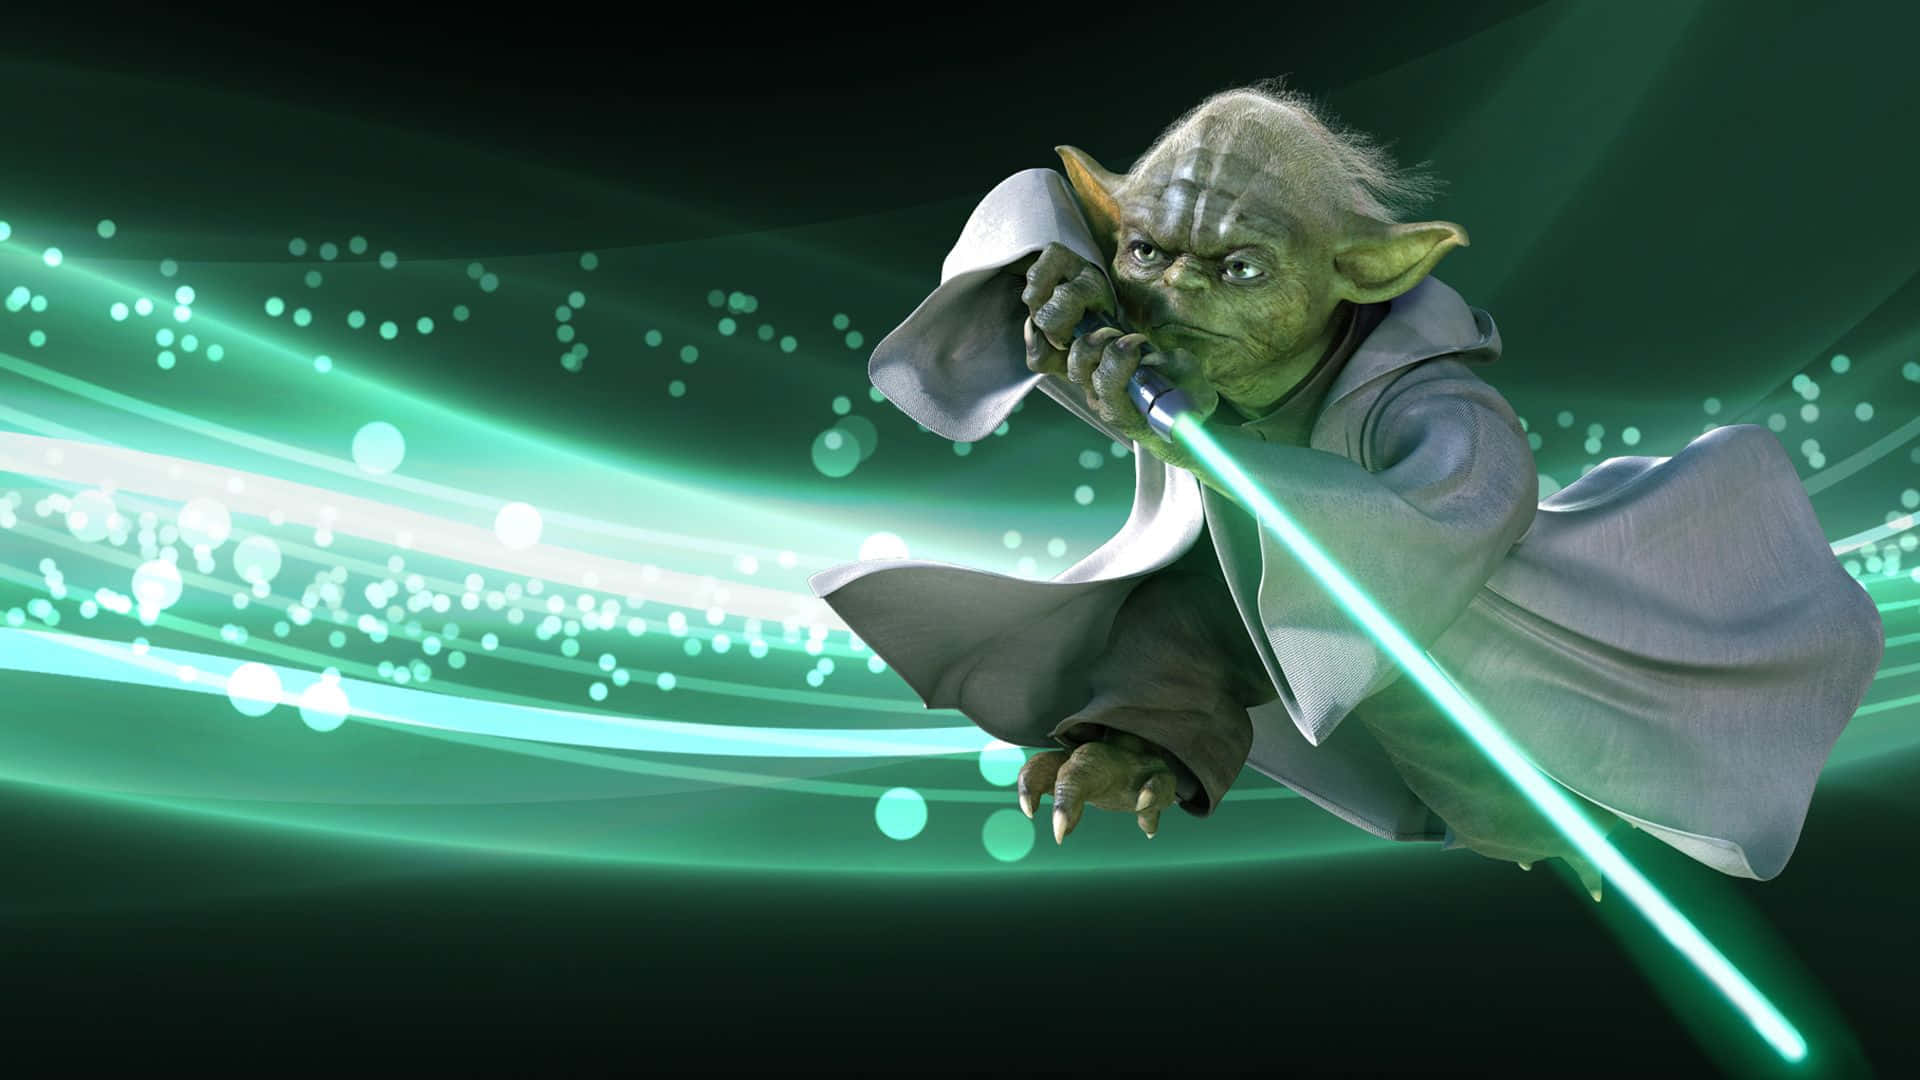 Envis Och Mäktig Yoda Leder Sina Elever.